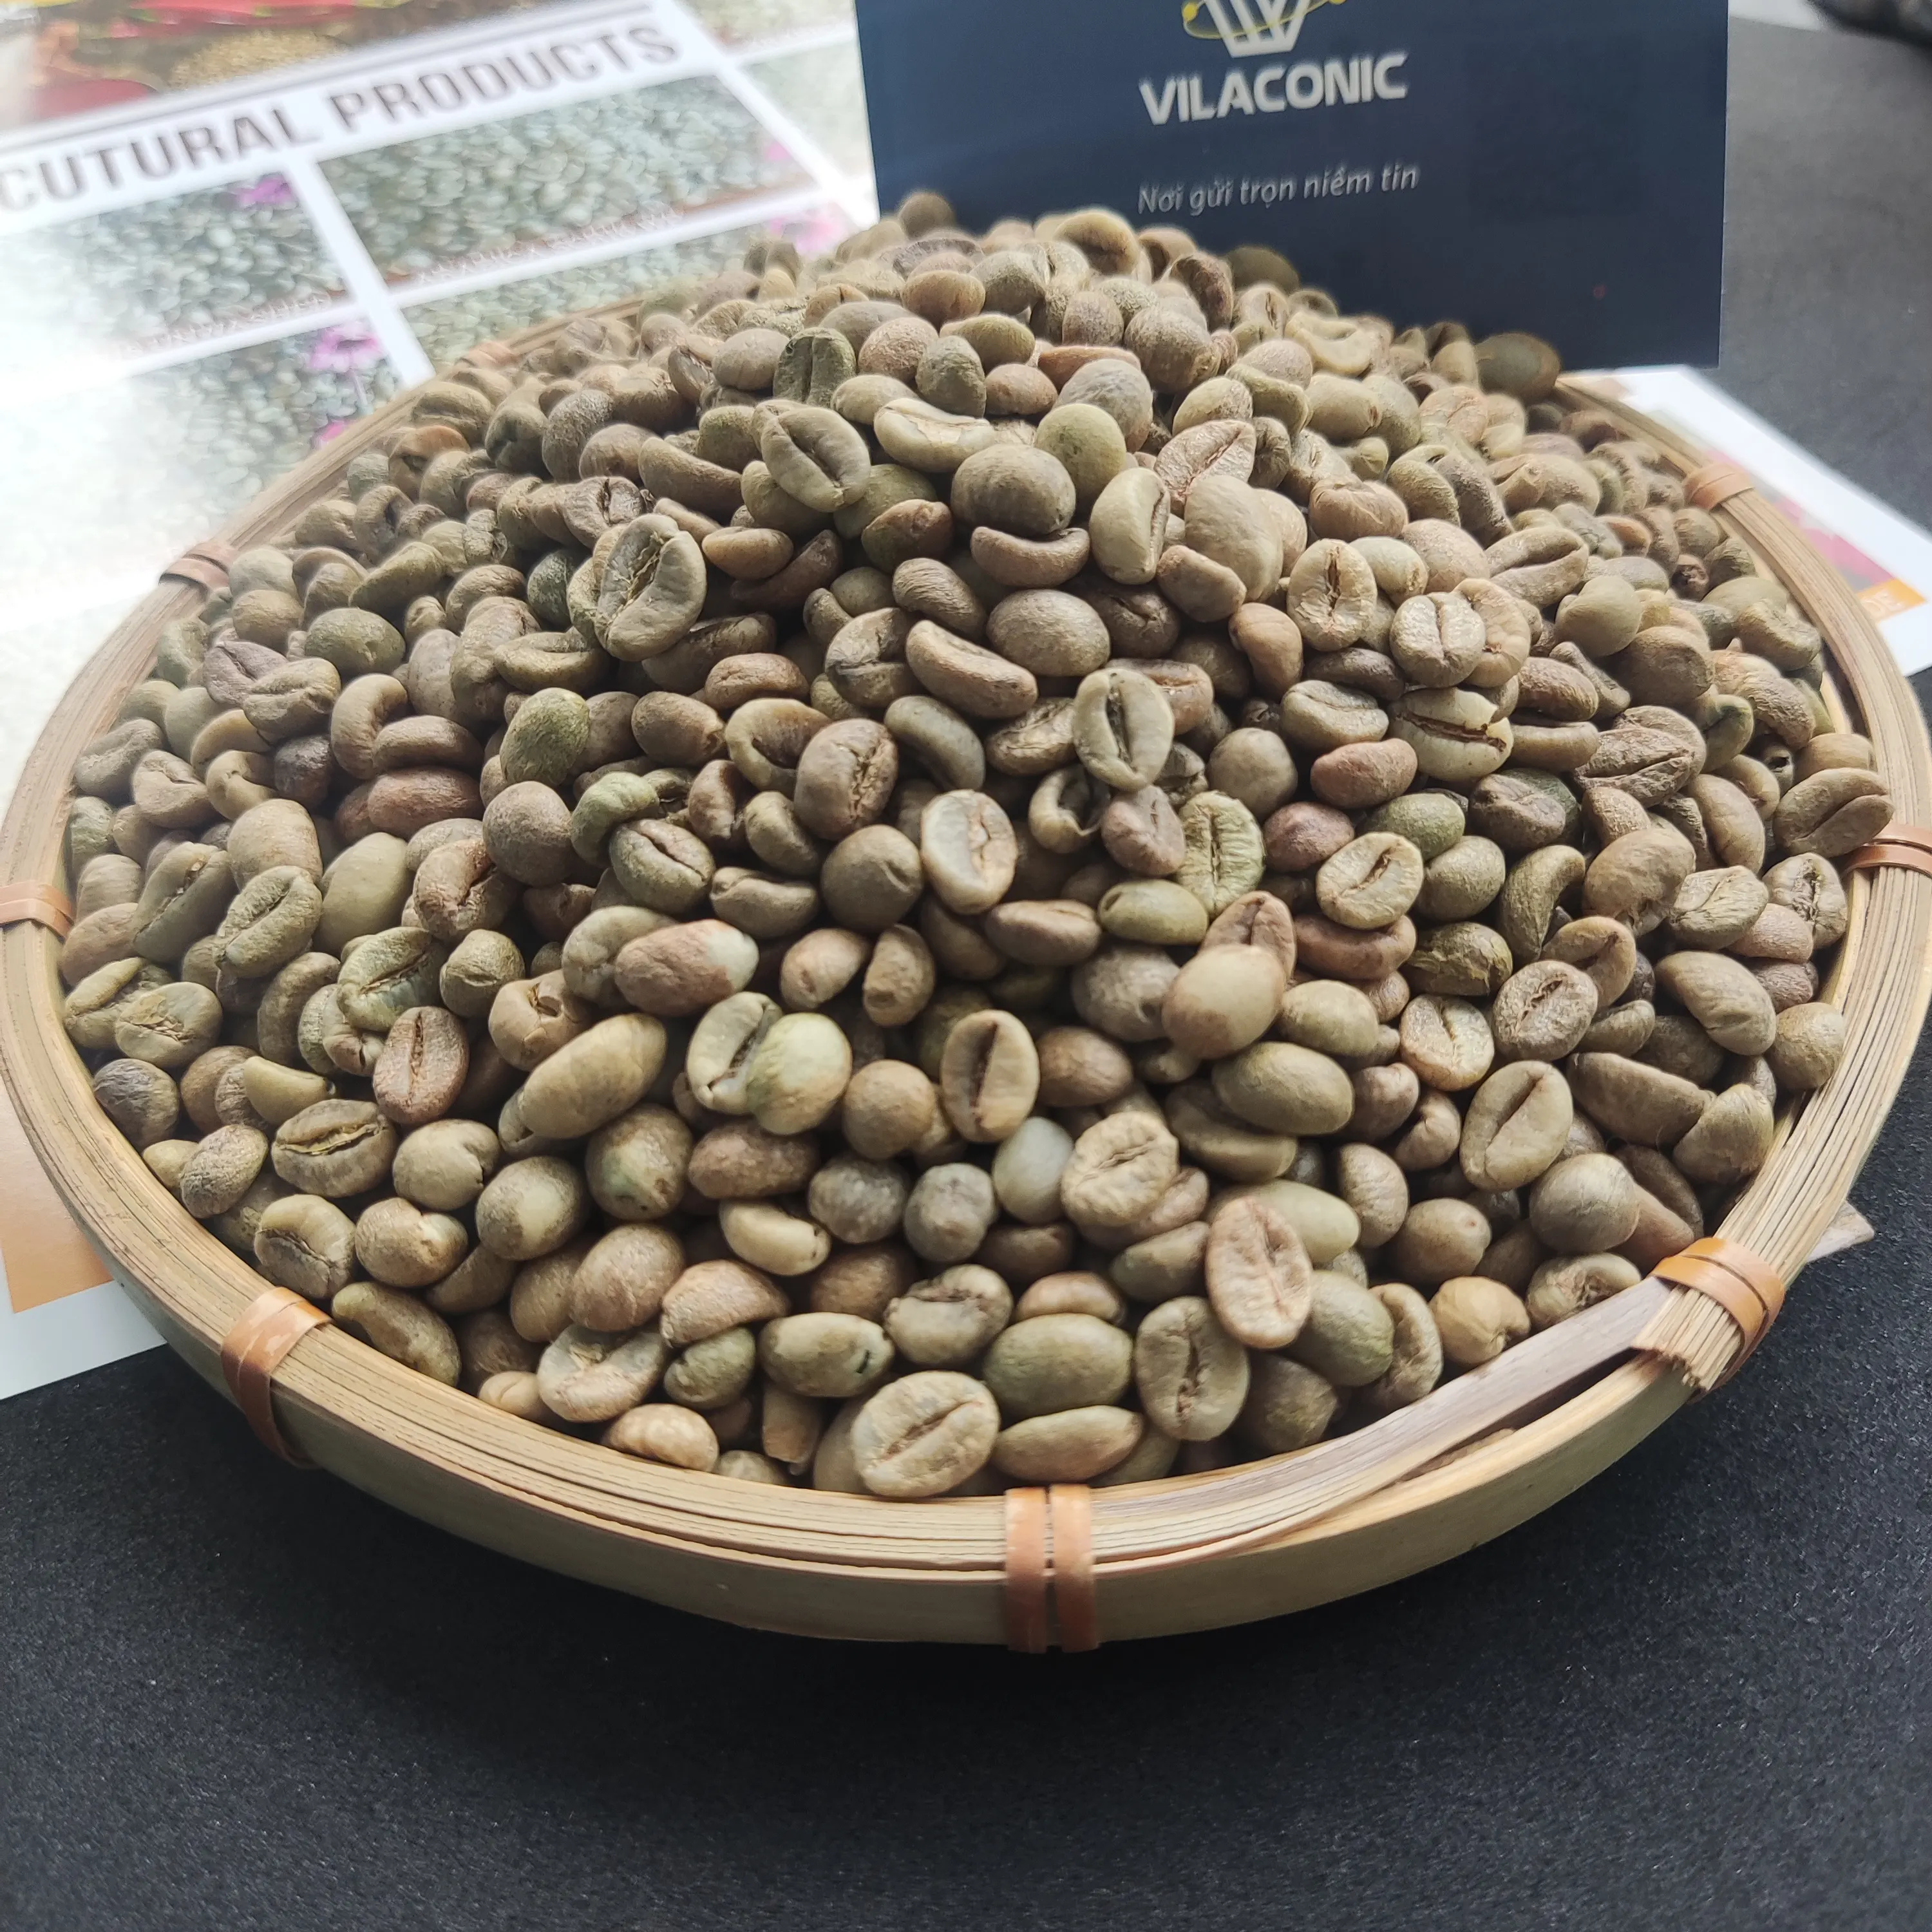 حبوب القهوة الخضراء من روبوستا الفيتنامي للبيع بالجملة SCR16 SCR18 مصقولة وتنظيفة دون غسل رخيصة الثمن للغاية عالية الجودة للتصدير بكميات كبيرة